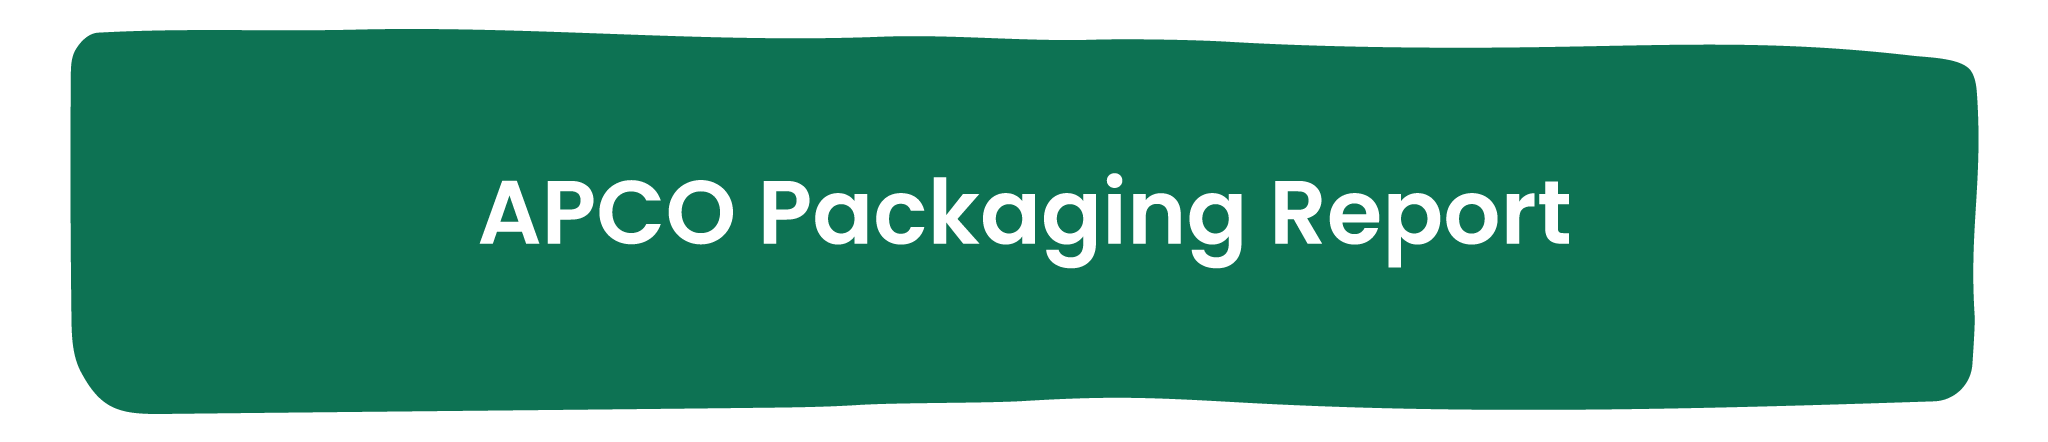 APCO Packaging Report